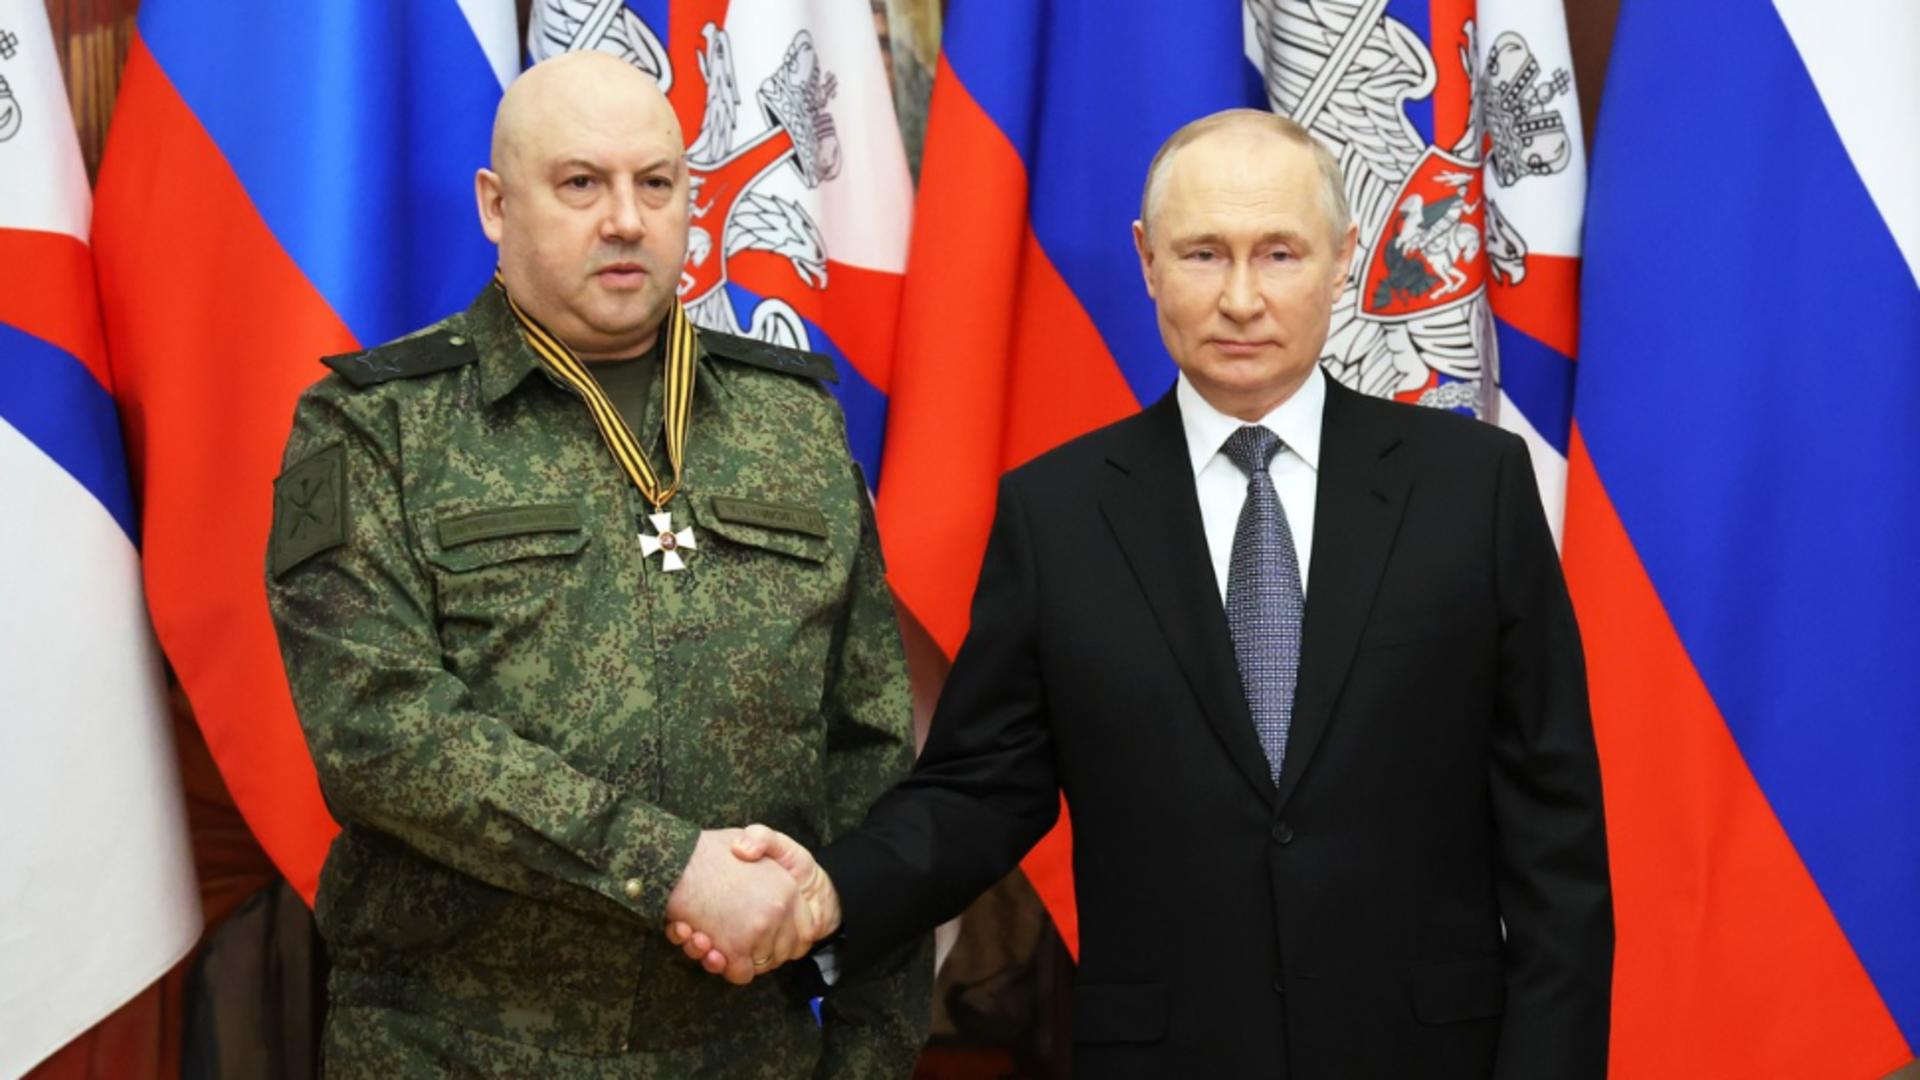 Generalul Serghei Surovikin, unul dintre cei mai brutali comandanți ai lui Putin (Profimedia)